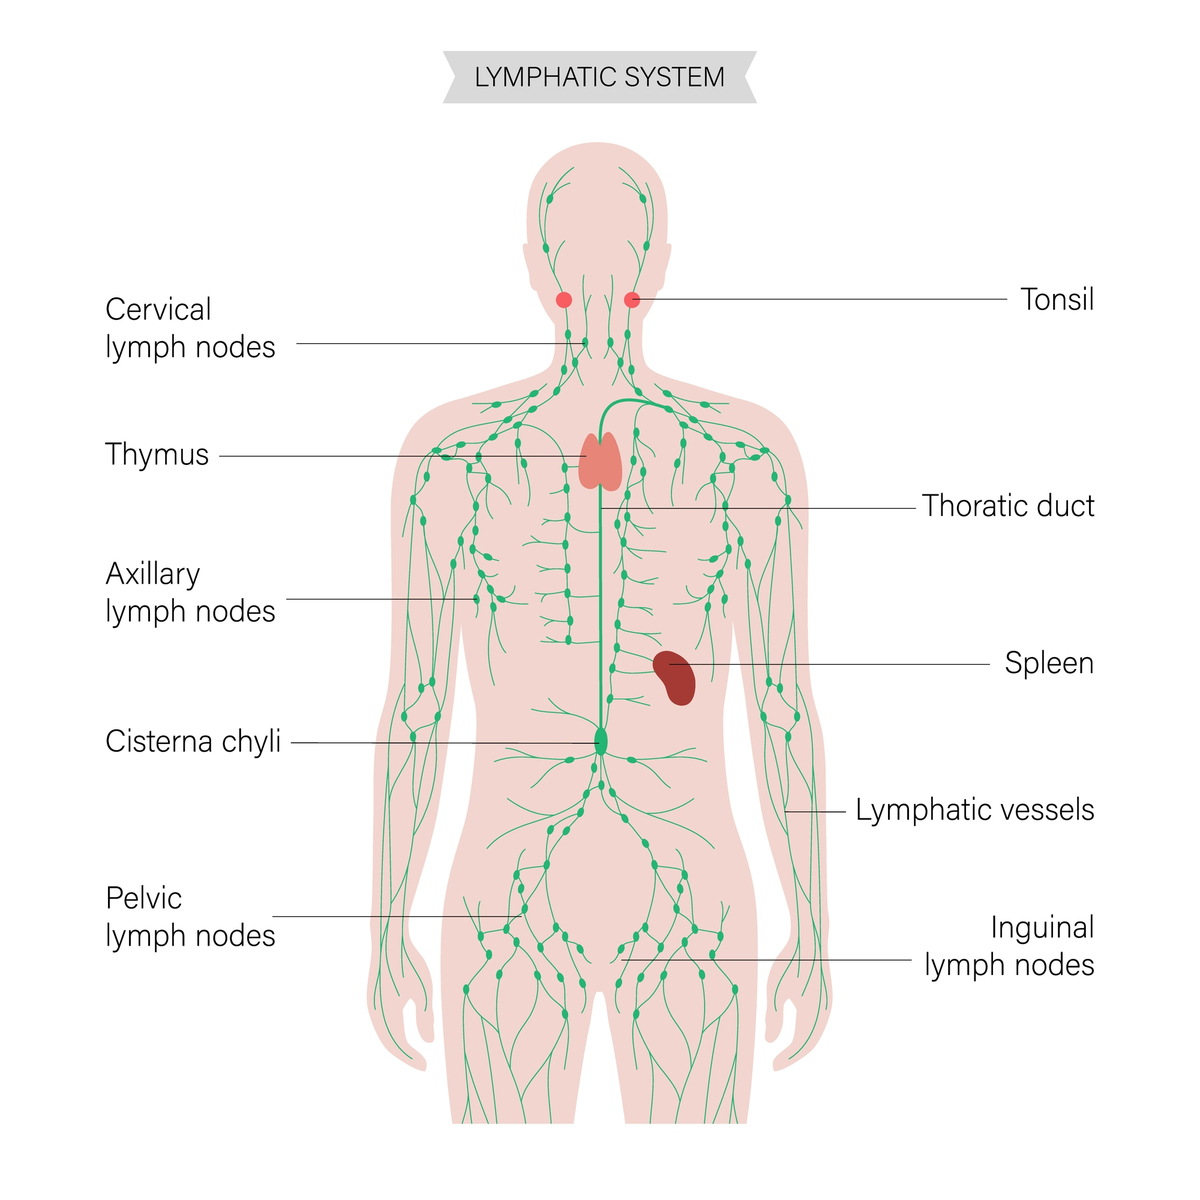 Prikaz limfnog sistema u telu